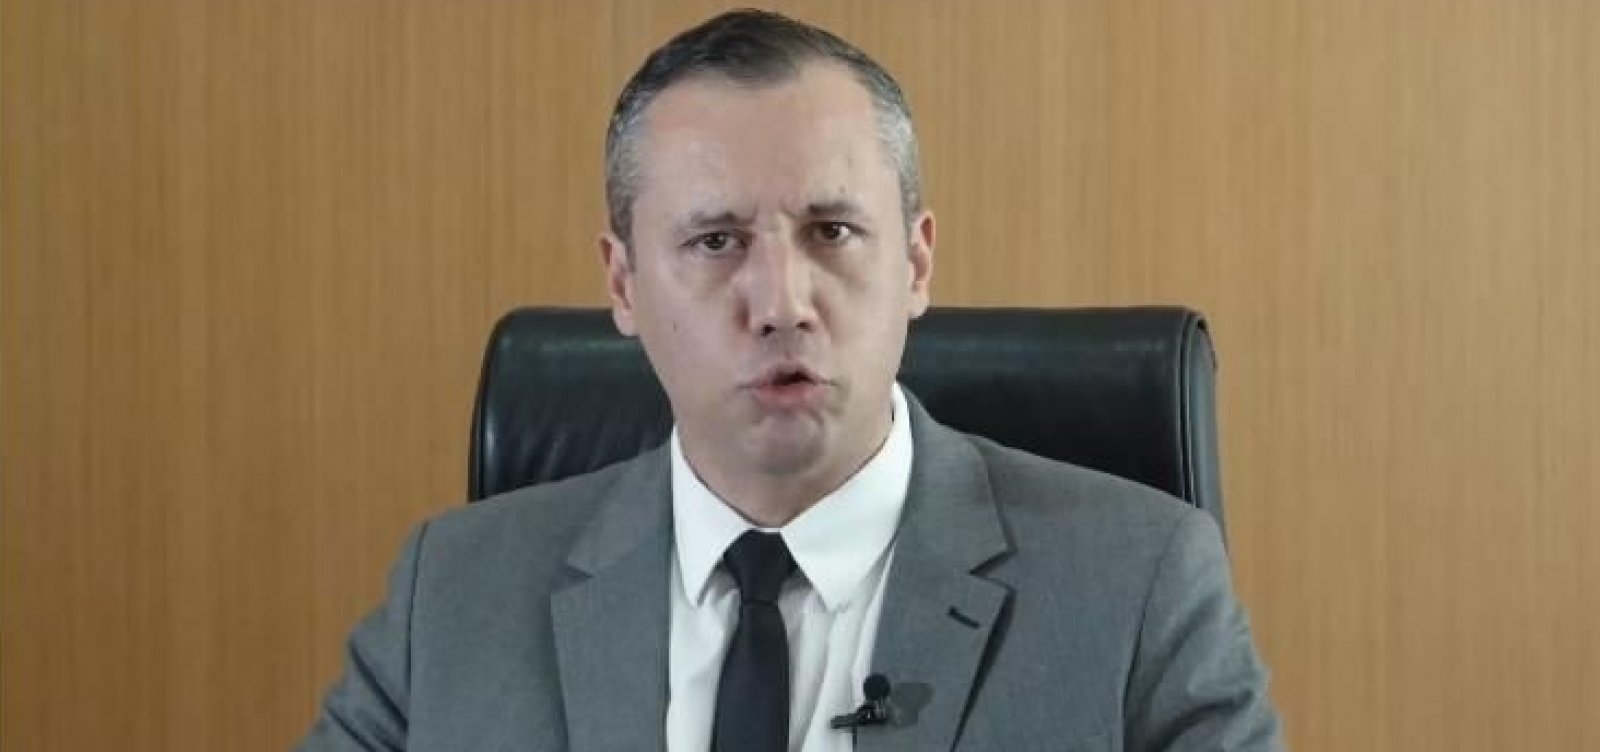 Secretário da Cultura de Bolsonaro imita ministro nazista em pronunciamento; veja vídeo